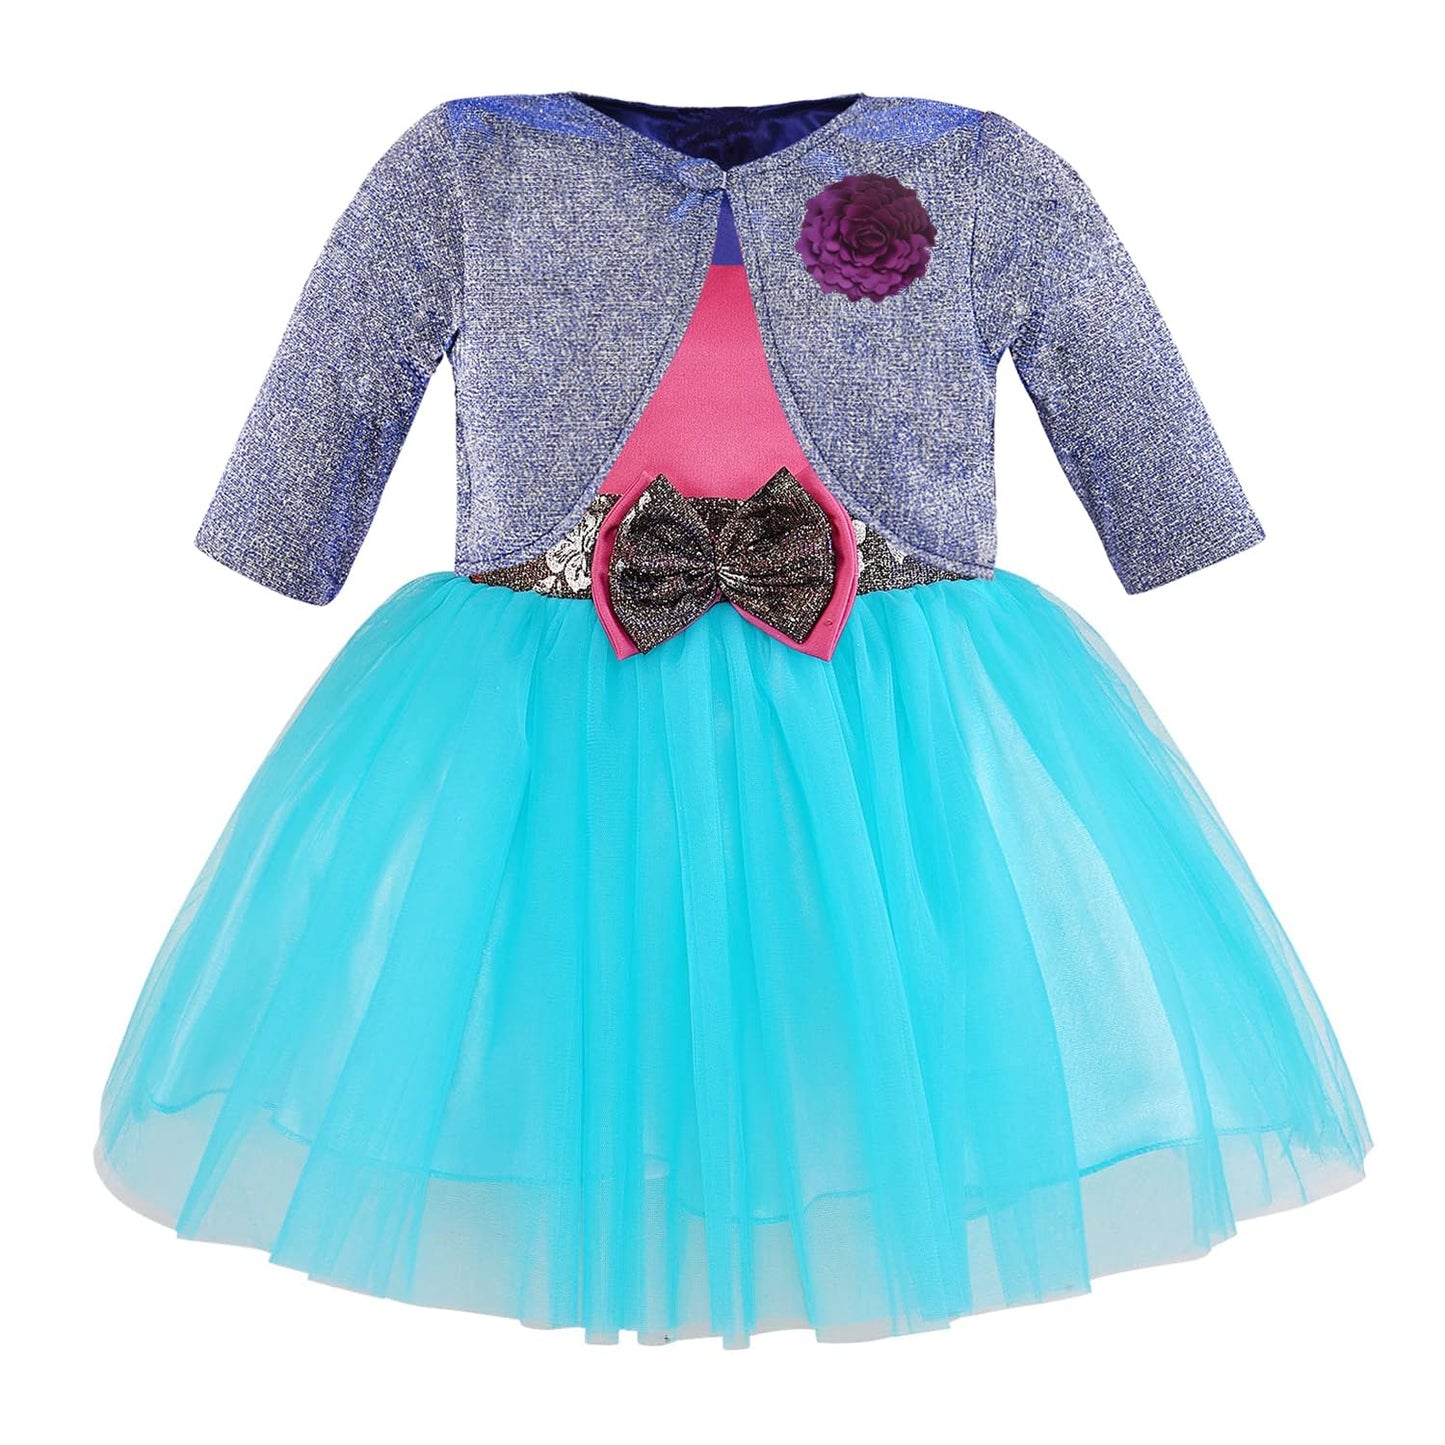 Wish Karo baby girls partywear frocks dress for girls fe3132bluJKTBLUL